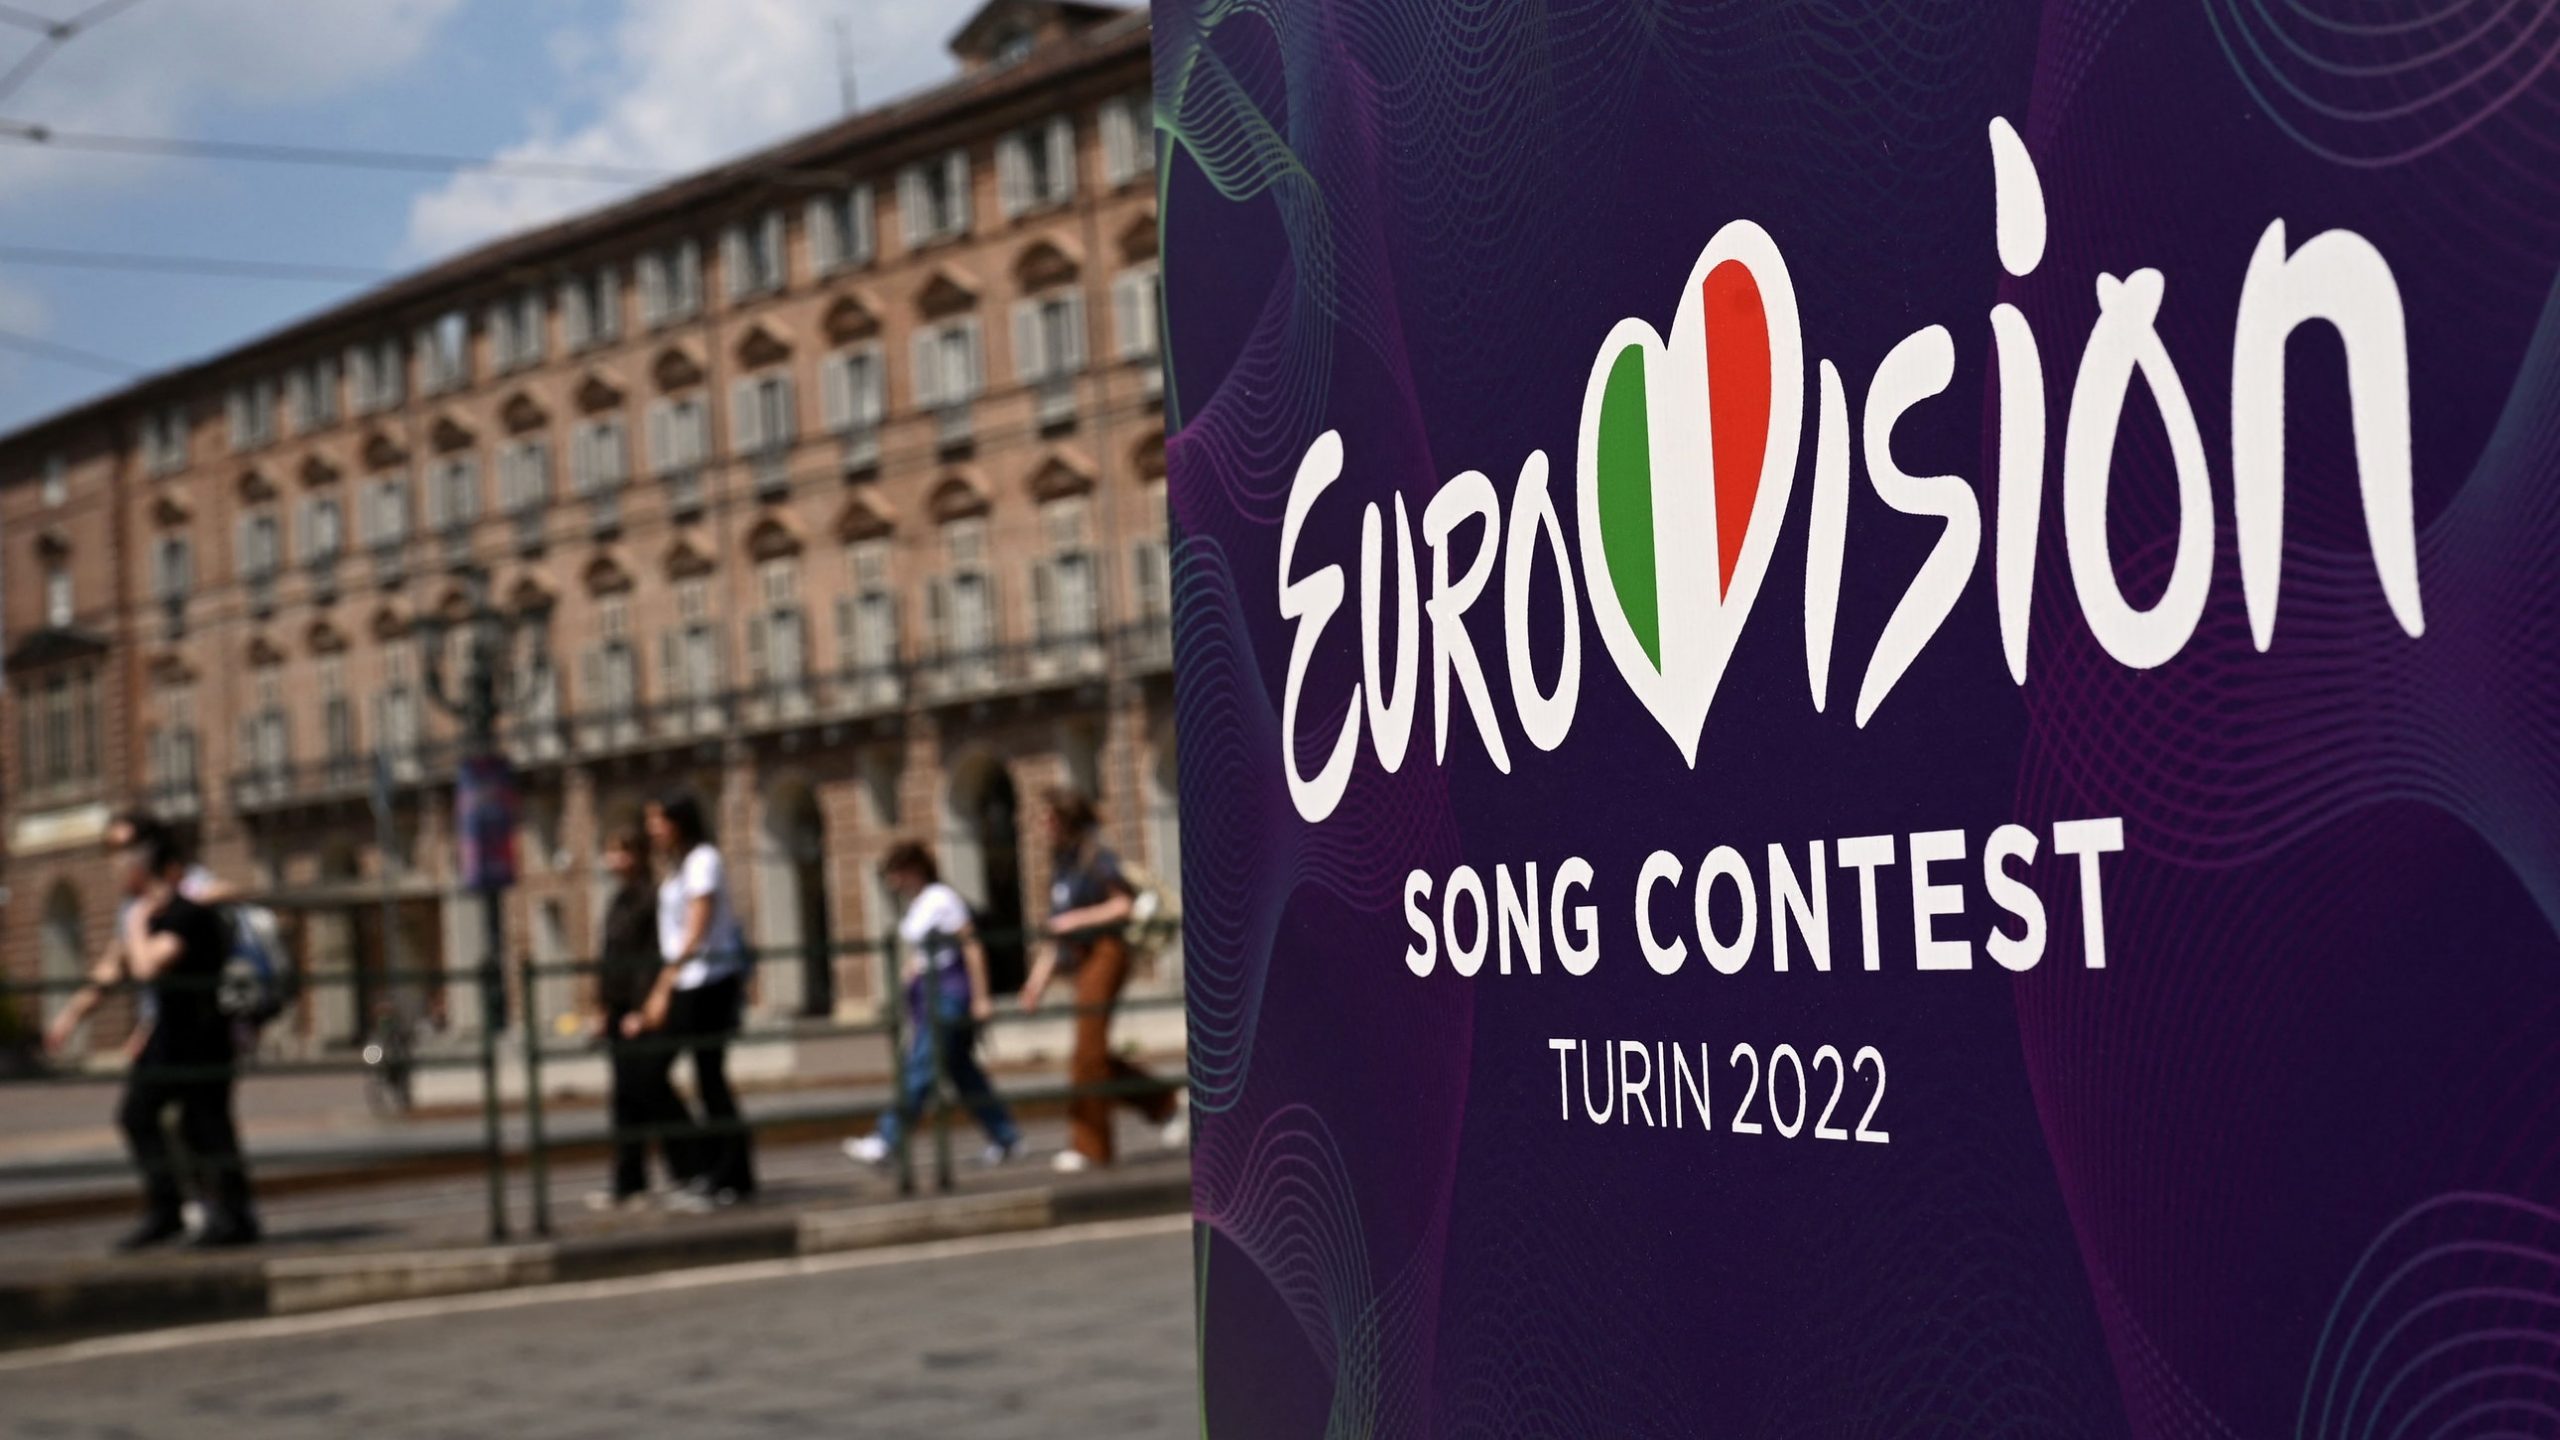 Eurovision Song Contest 2022, al timone Mika, Pausini e Cattelan: ecco come si svilupperanno le tre serate